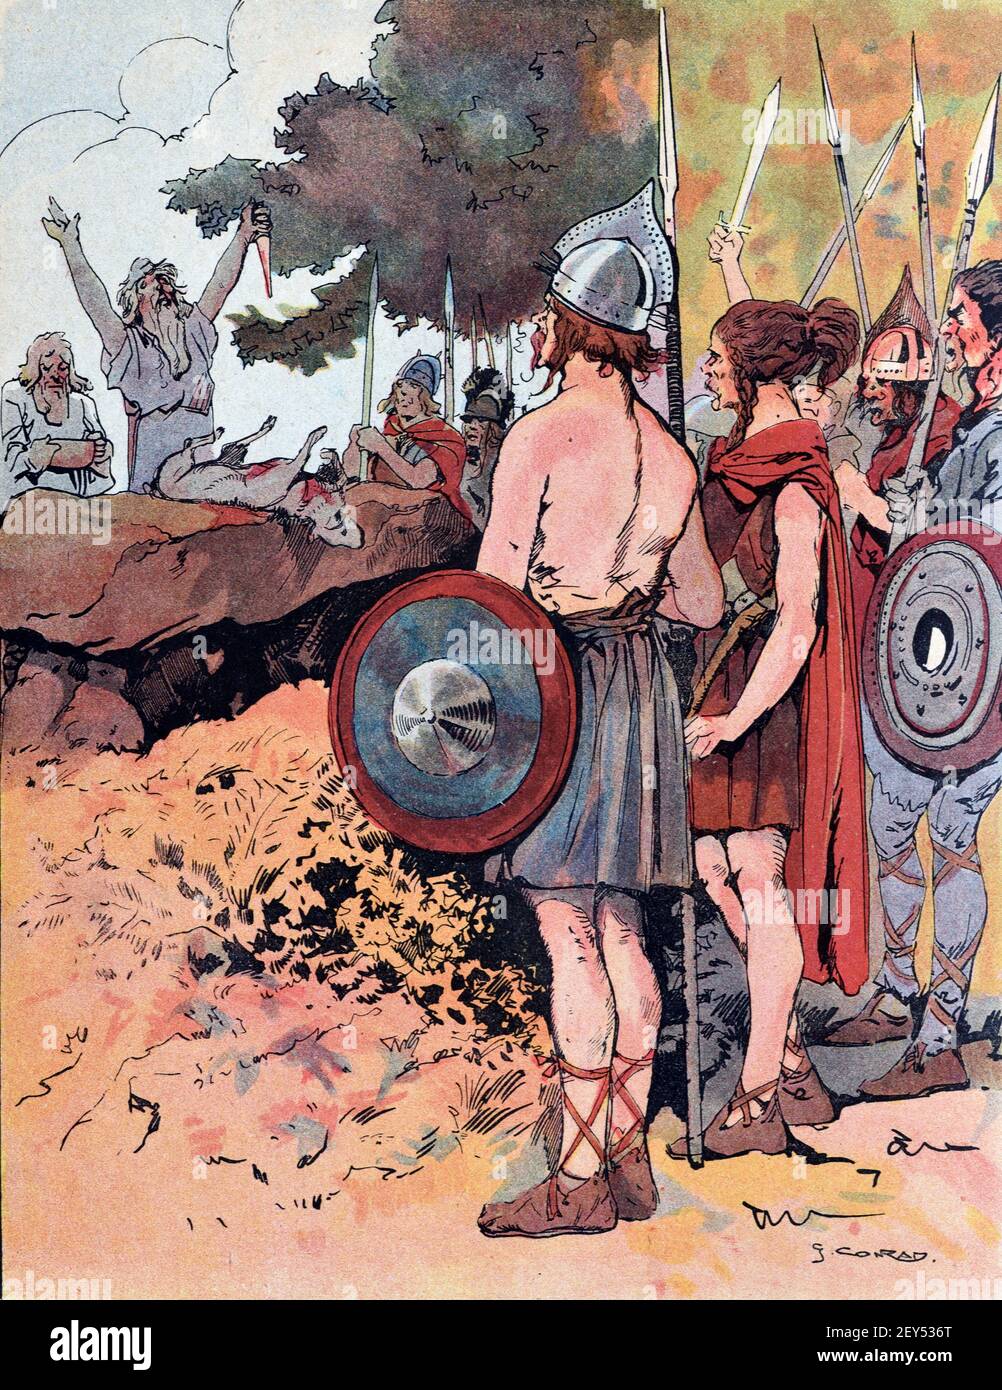 Les Gaulois et les Druides antiques sacrifient un Goat sur un Menhir comme bon OMEN avant d'entrer dans la bataille pendant le règne de Vercingetorix (c82BC-46BC) dans la Gaule antique, aujourd'hui la France. Illustration ancienne c1940 Banque D'Images